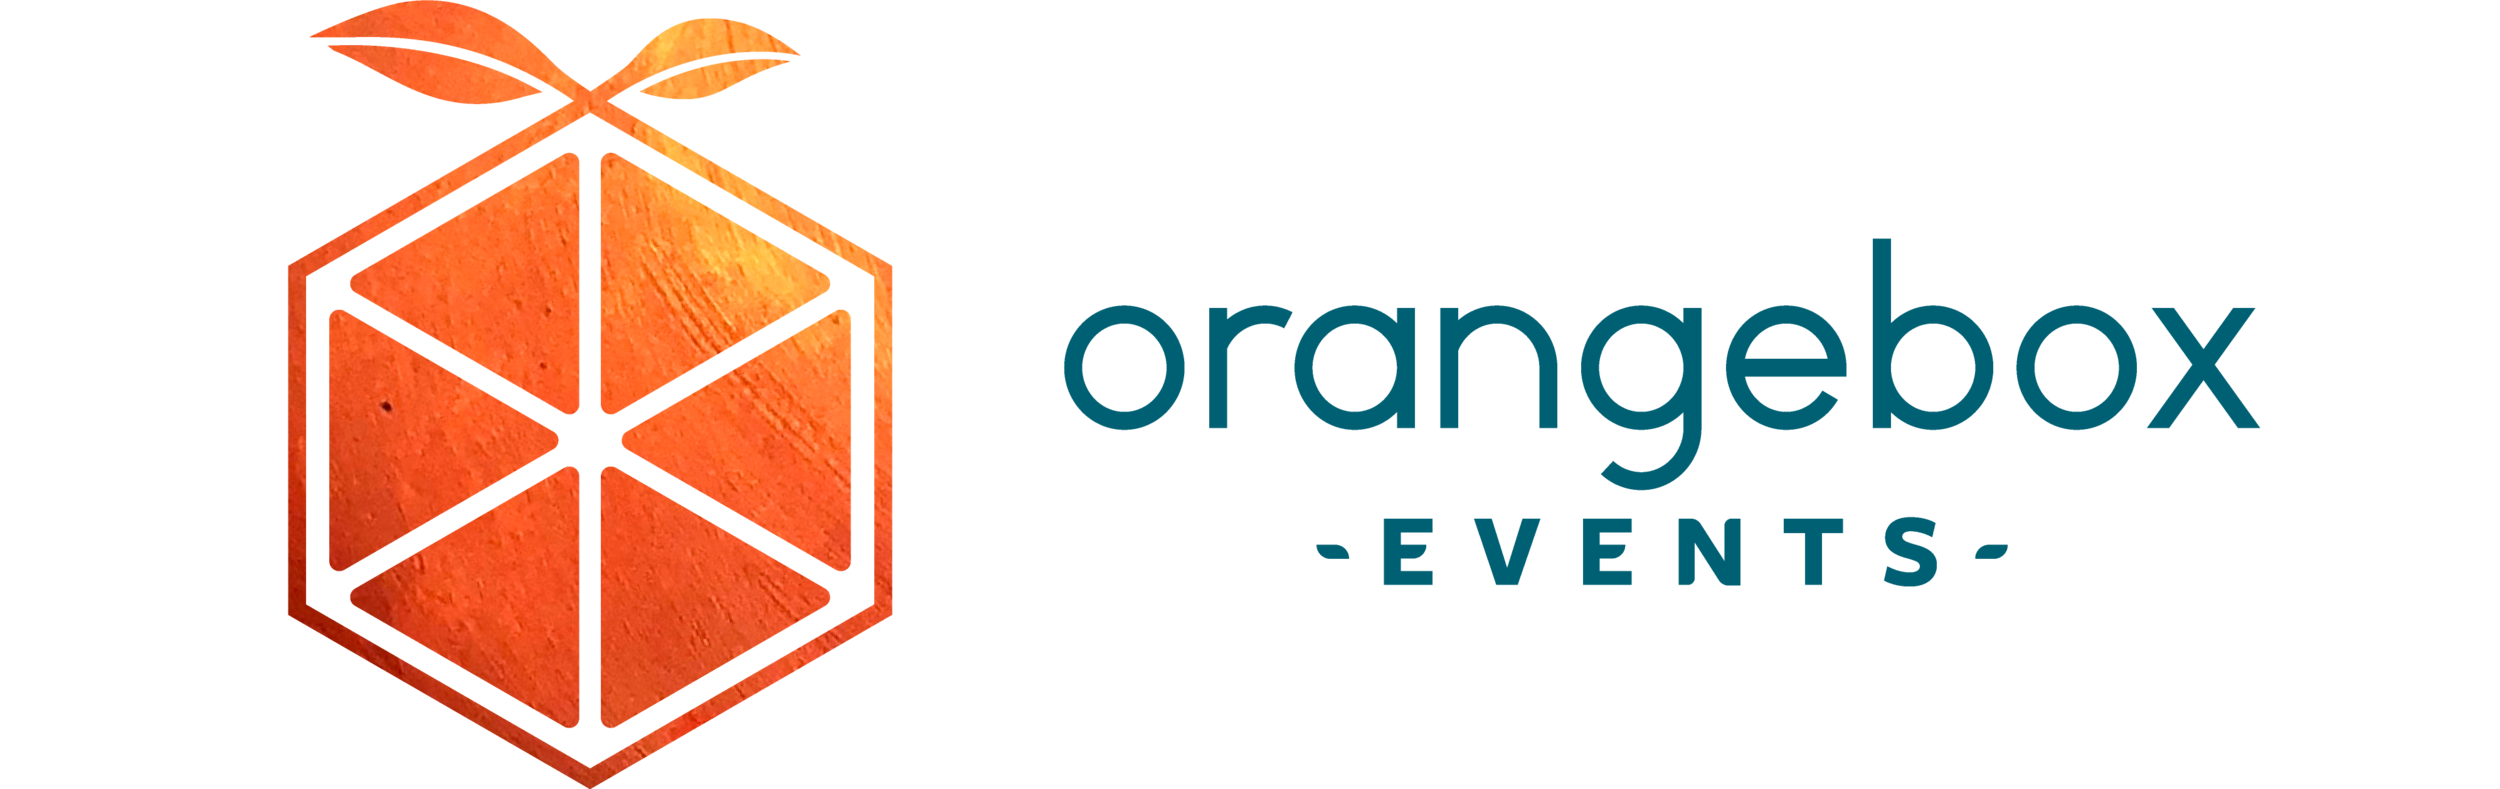 Orangebox Events